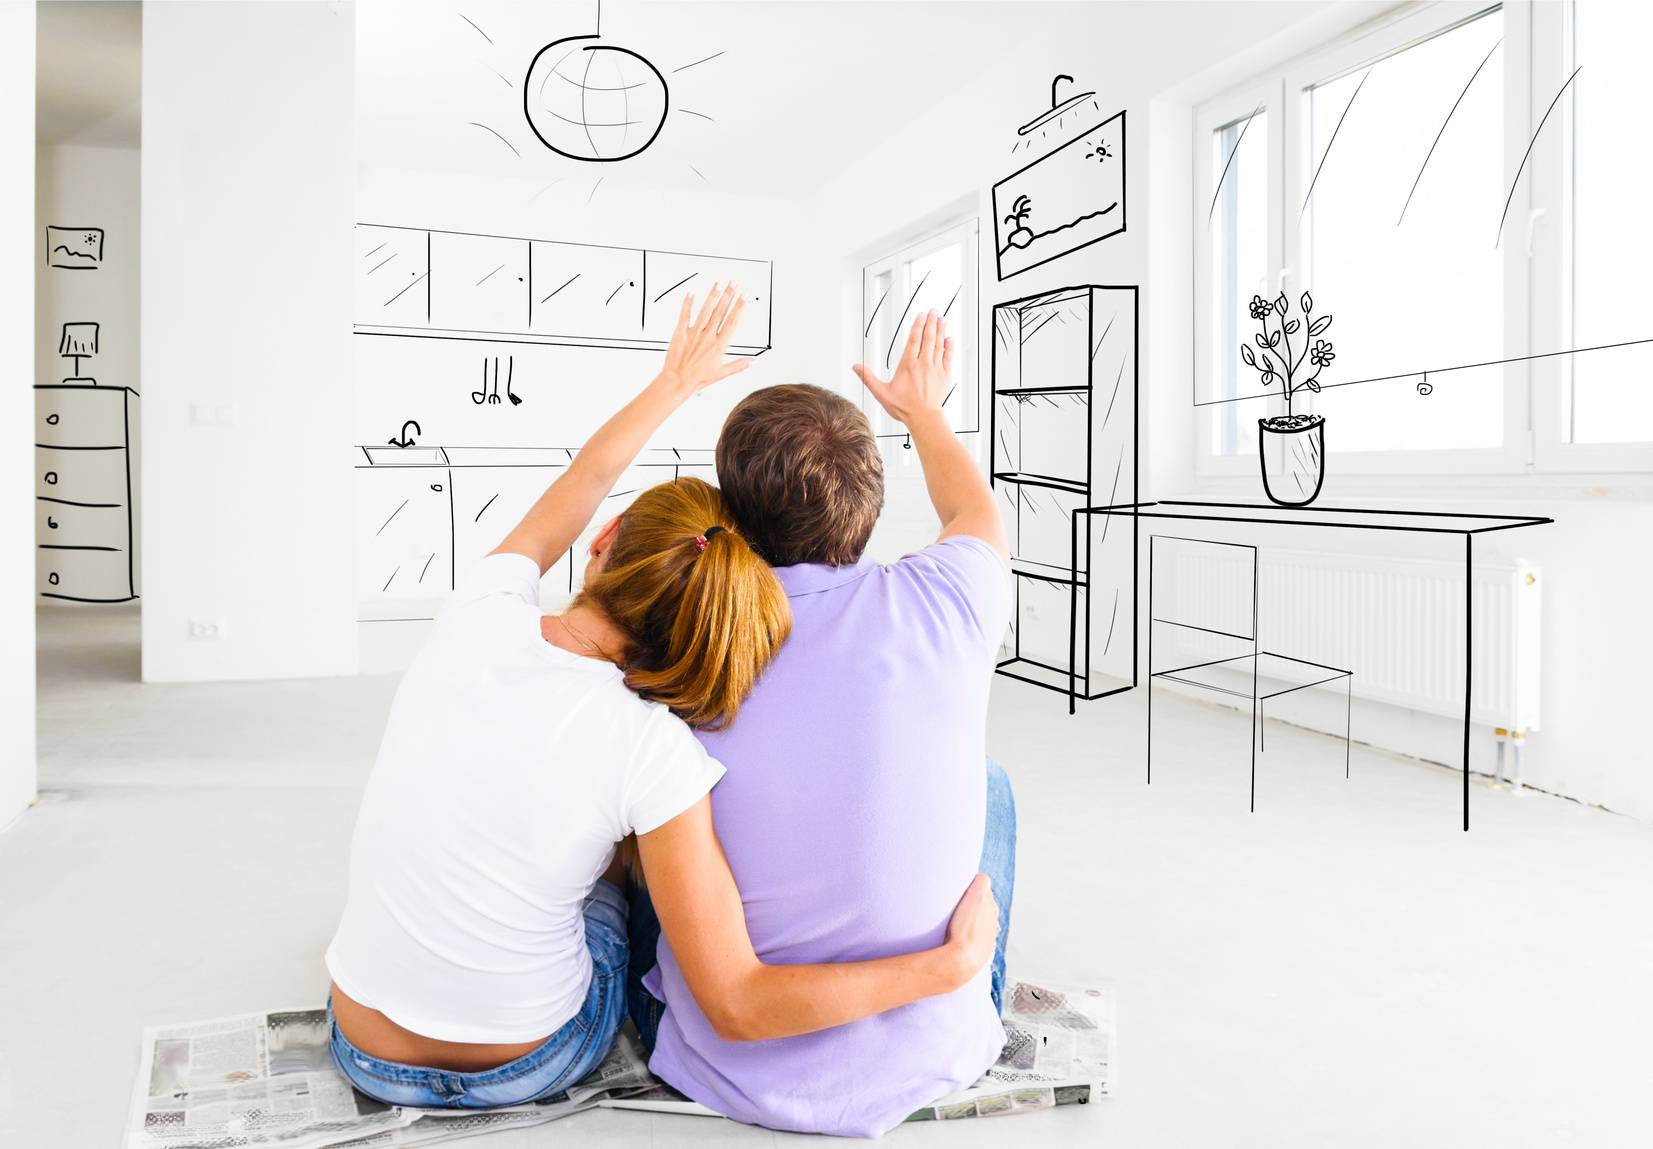 Как правильно подобрать интерьер в квартире, доме? как подобрать цвет кухни, спальни, мягкой мебели в гостиную? как выбрать мебель для квартиры, избежав типичных ошибок как выбрать мебель в интерьер правильно